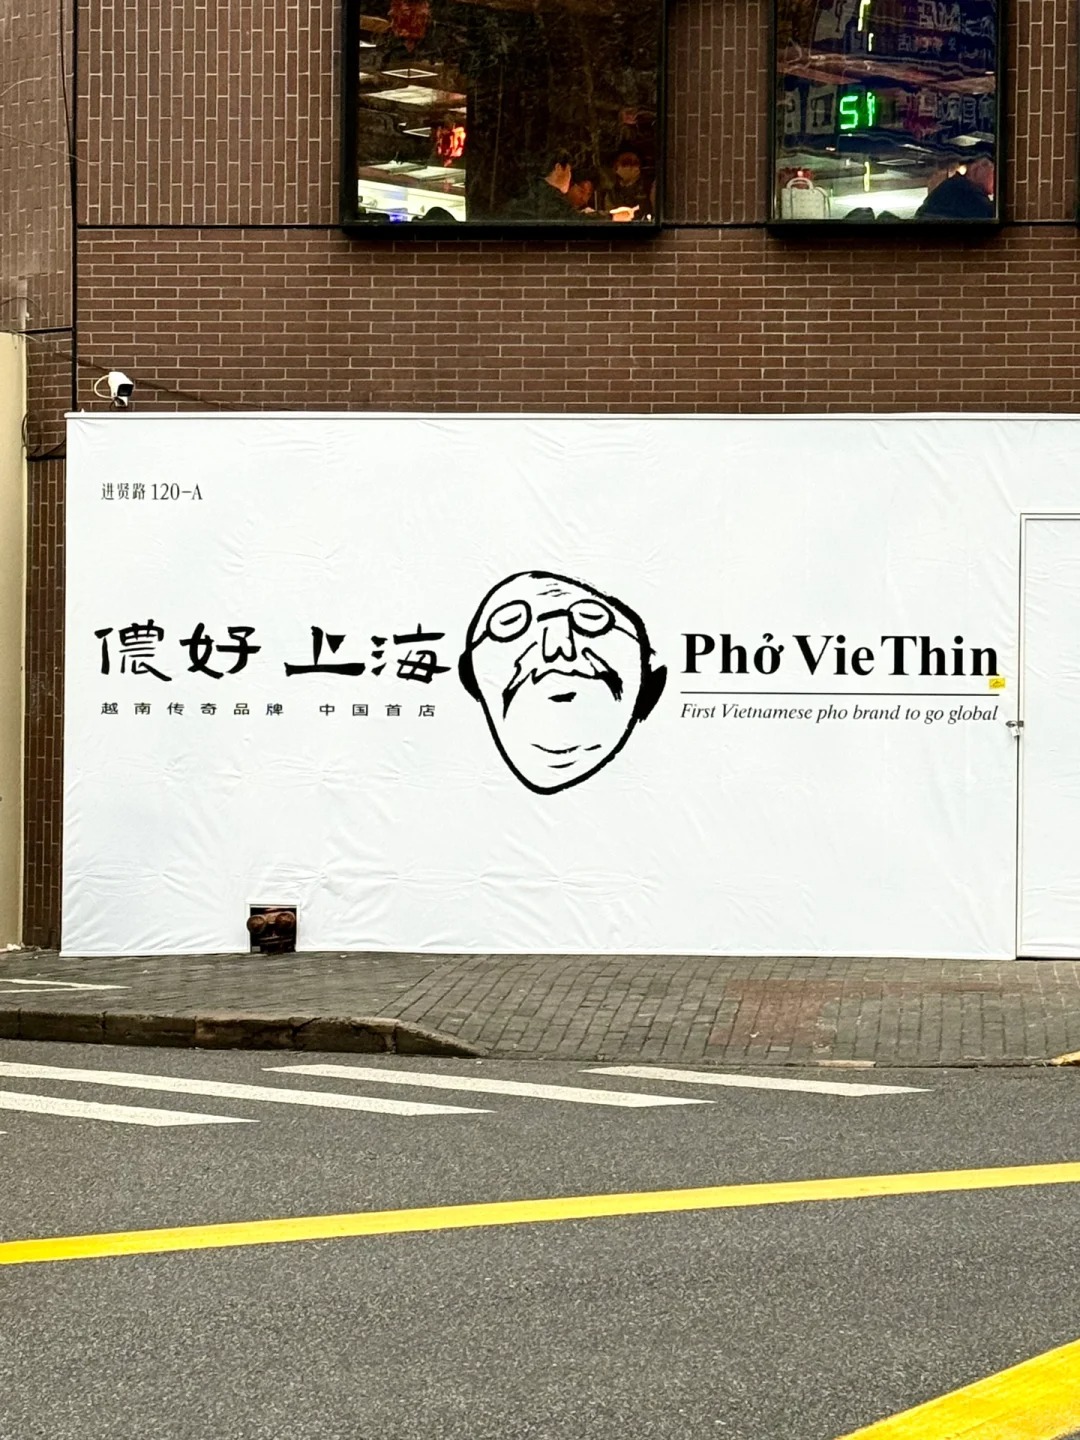 越南粉Phở Thìn中国首店(Pho VieThin)落地上海 最快3月试营业